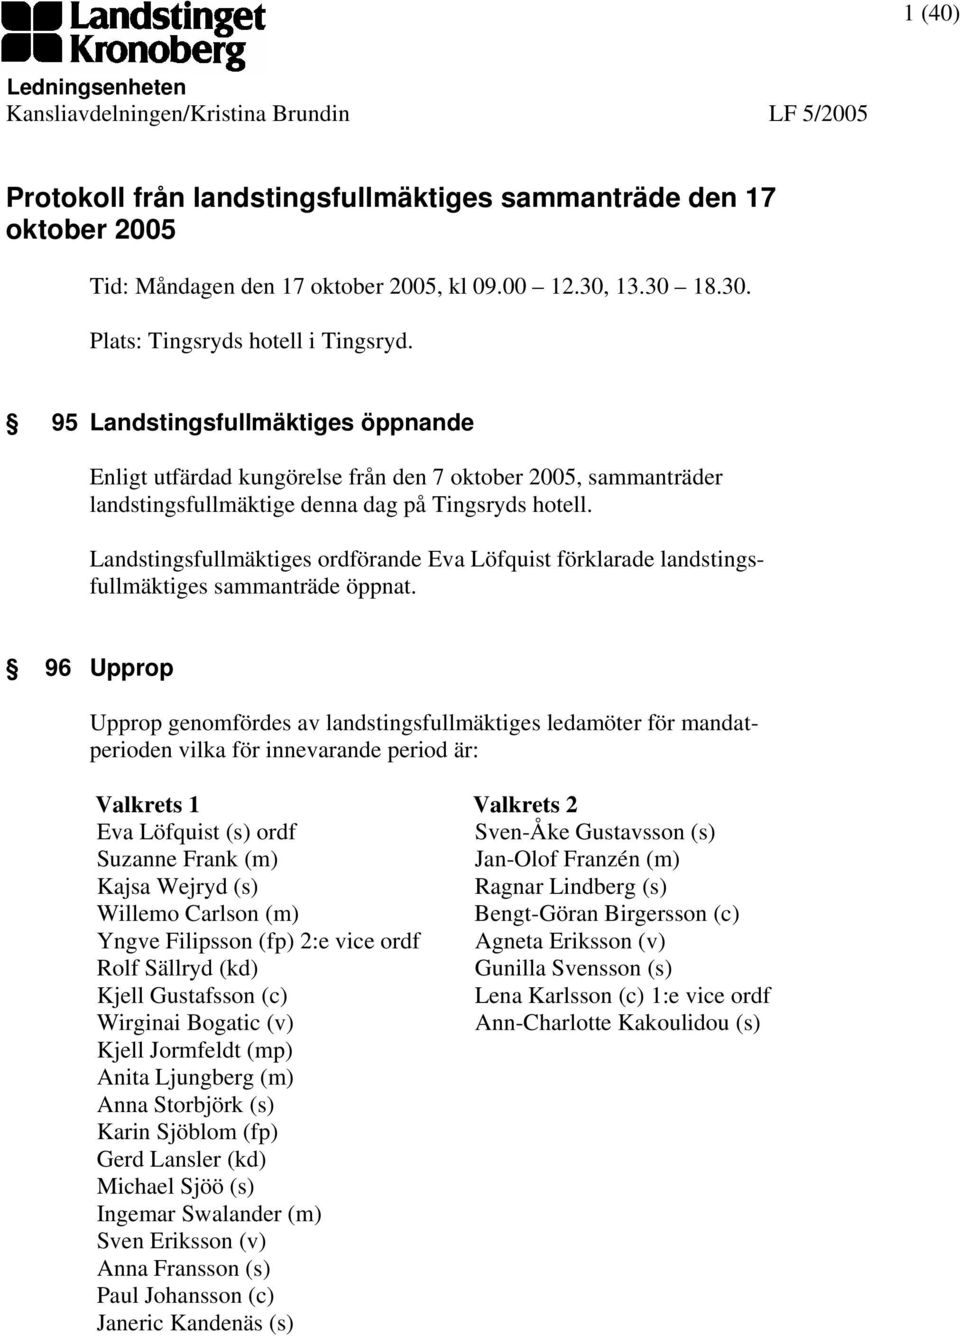 95 Landstingsfullmäktiges öppnande Enligt utfärdad kungörelse från den 7 oktober 2005, sammanträder landstingsfullmäktige denna dag på Tingsryds hotell.